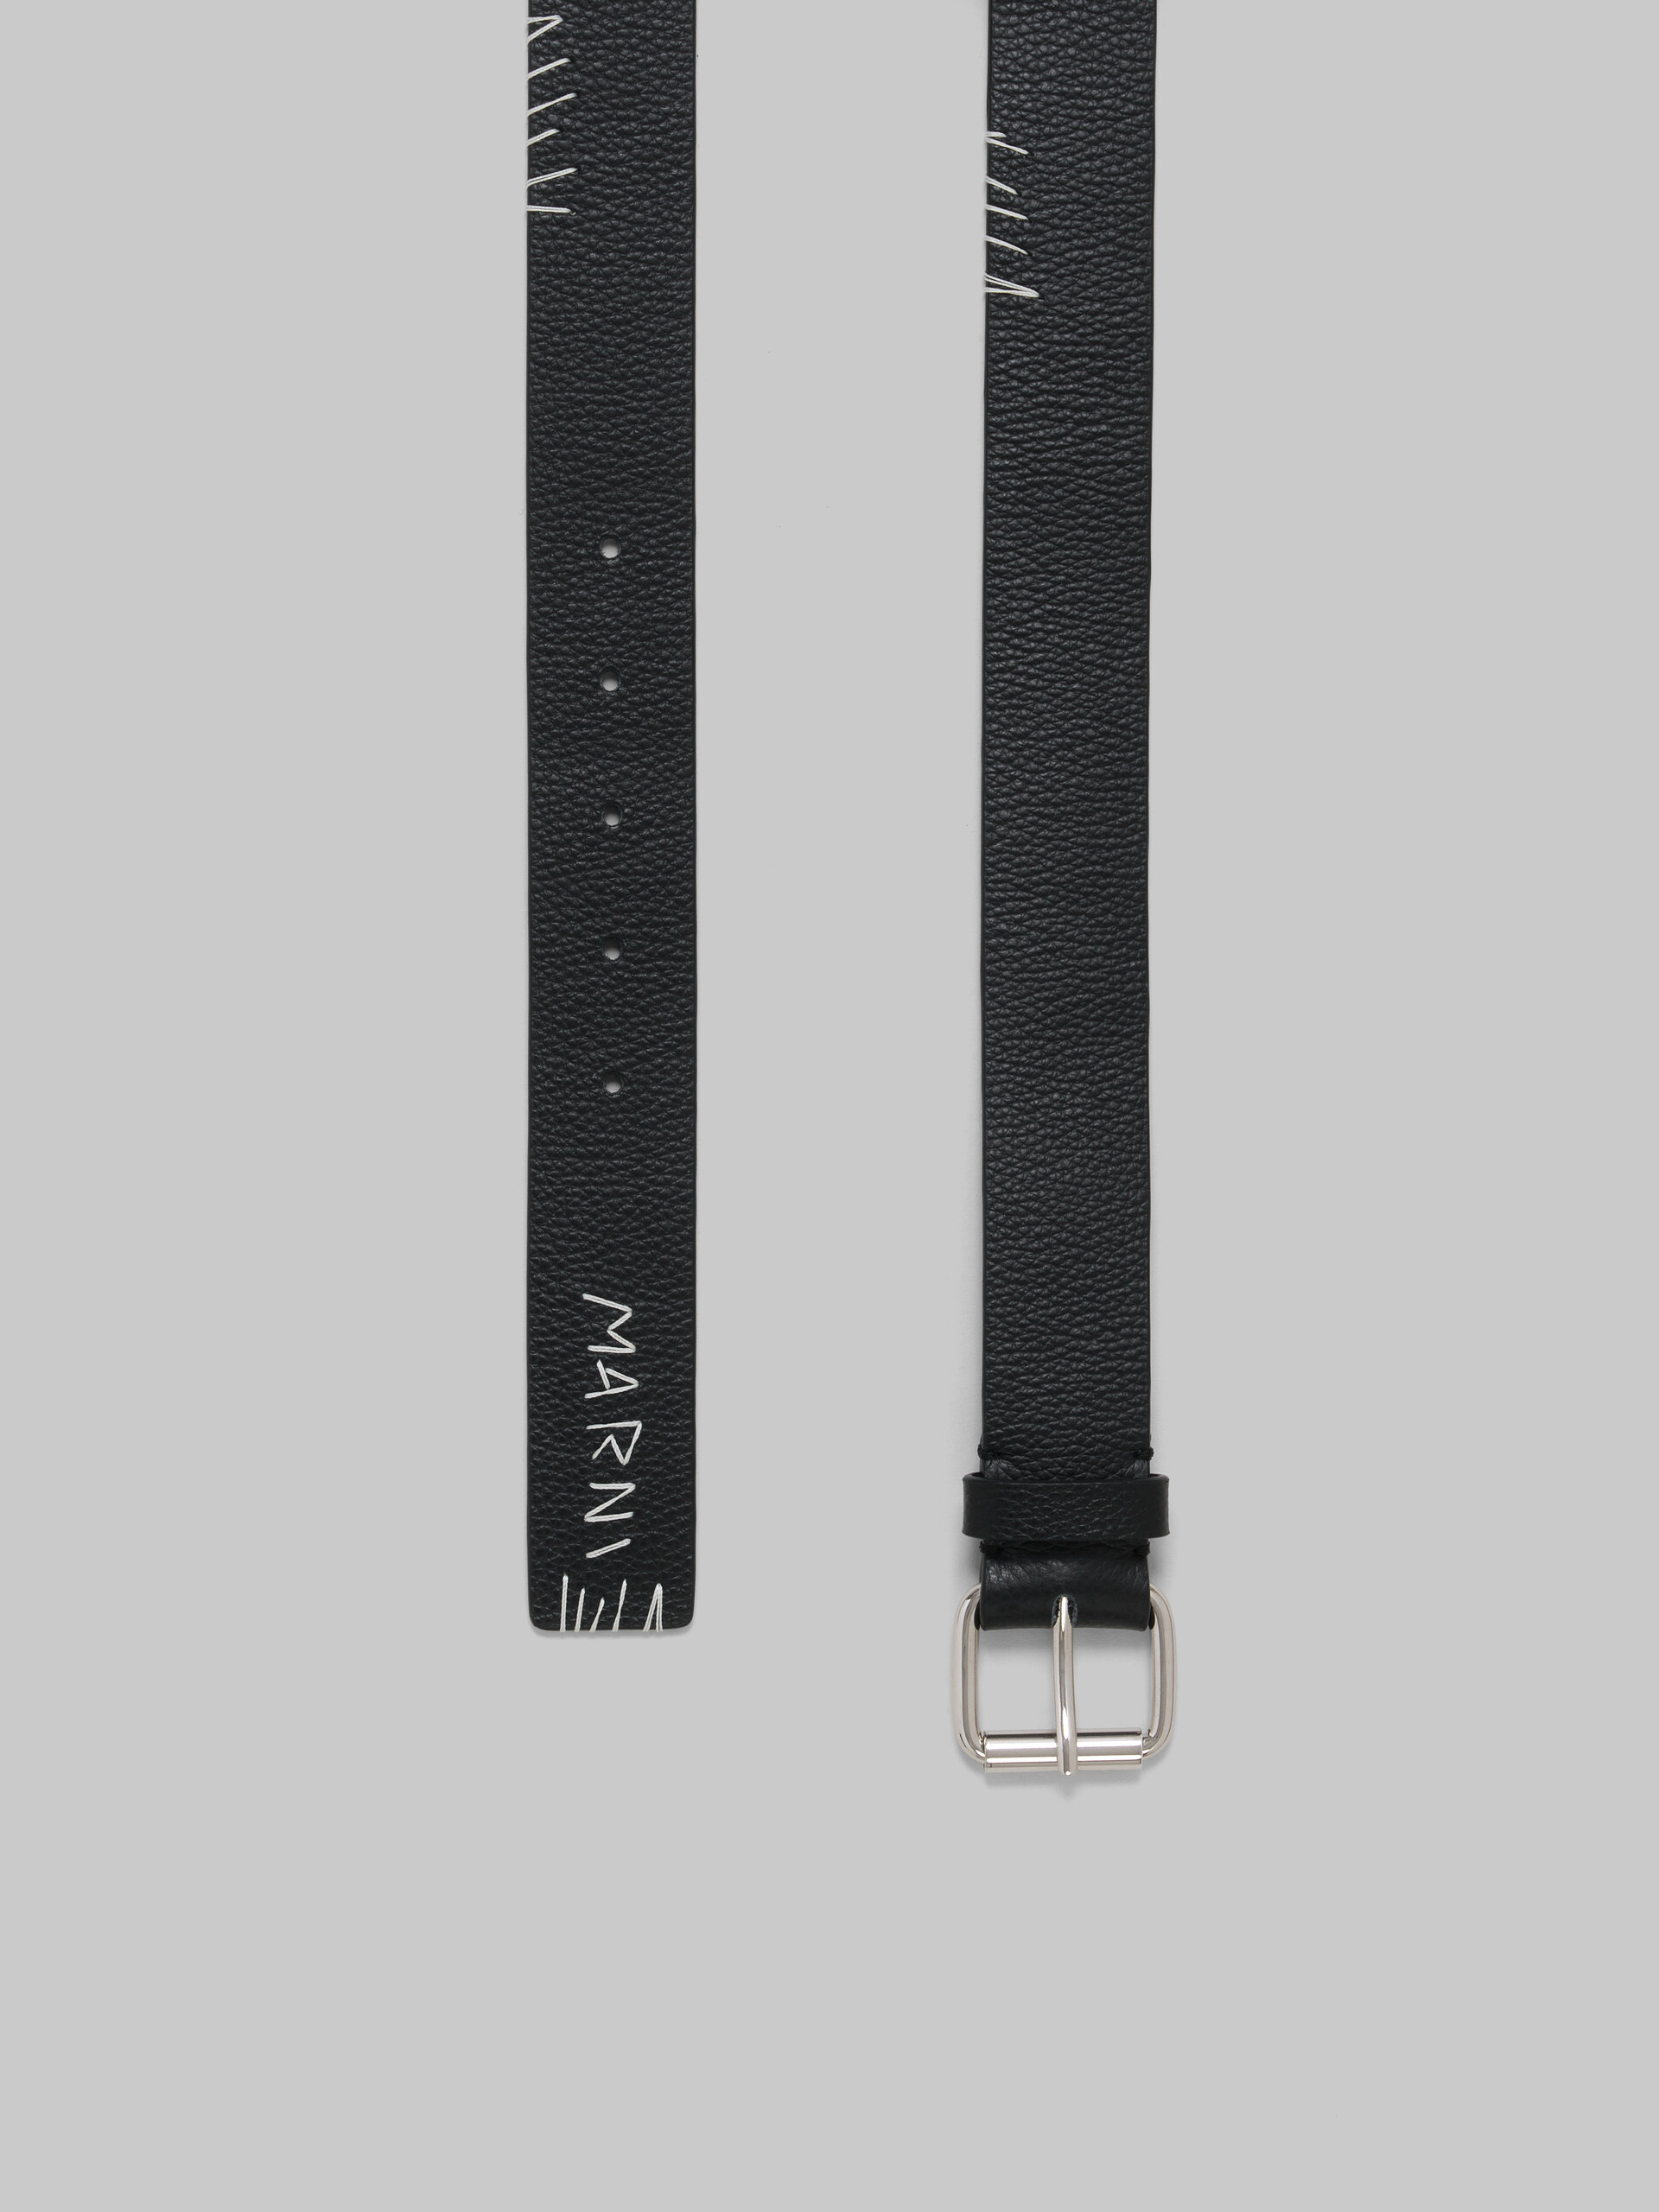 Black leather belt with Marni Mending - Belts - Image 3